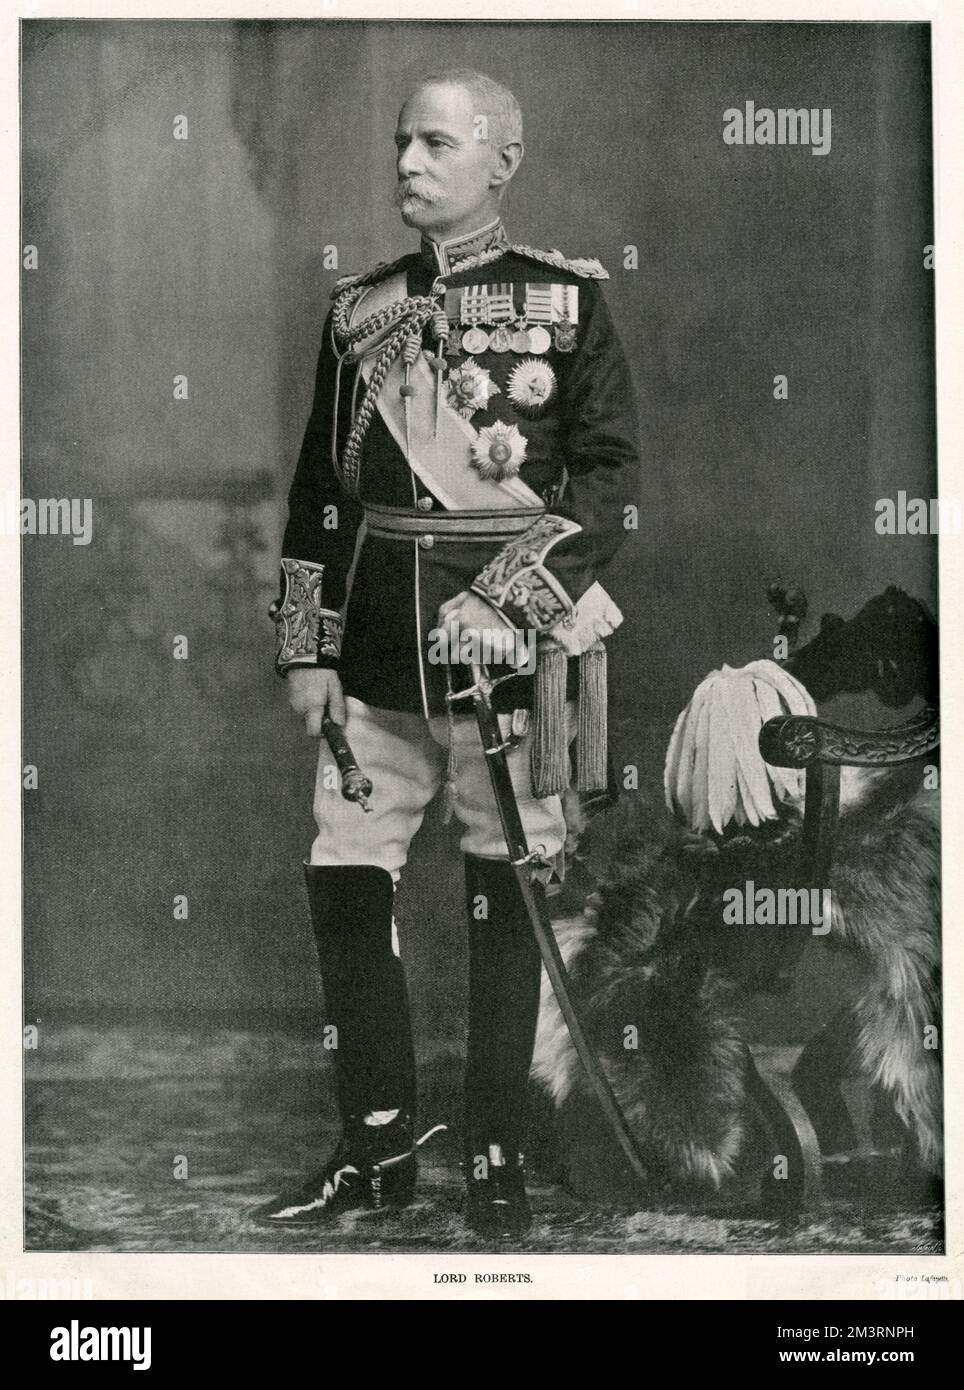 Frederick Sleigh Roberts, 1. Earl Roberts (1832-1914), britischer Soldat, einer der erfolgreichsten Kommandanten des 19.. Jahrhunderts. Er diente in der indischen Rebellion, der Expedition nach Abessinien und dem zweiten angloafghanischen Krieg, bevor er die britischen Streitkräfte im Zweiten Böhlerkrieg zum Erfolg führte. Datum: 1899 Stockfoto